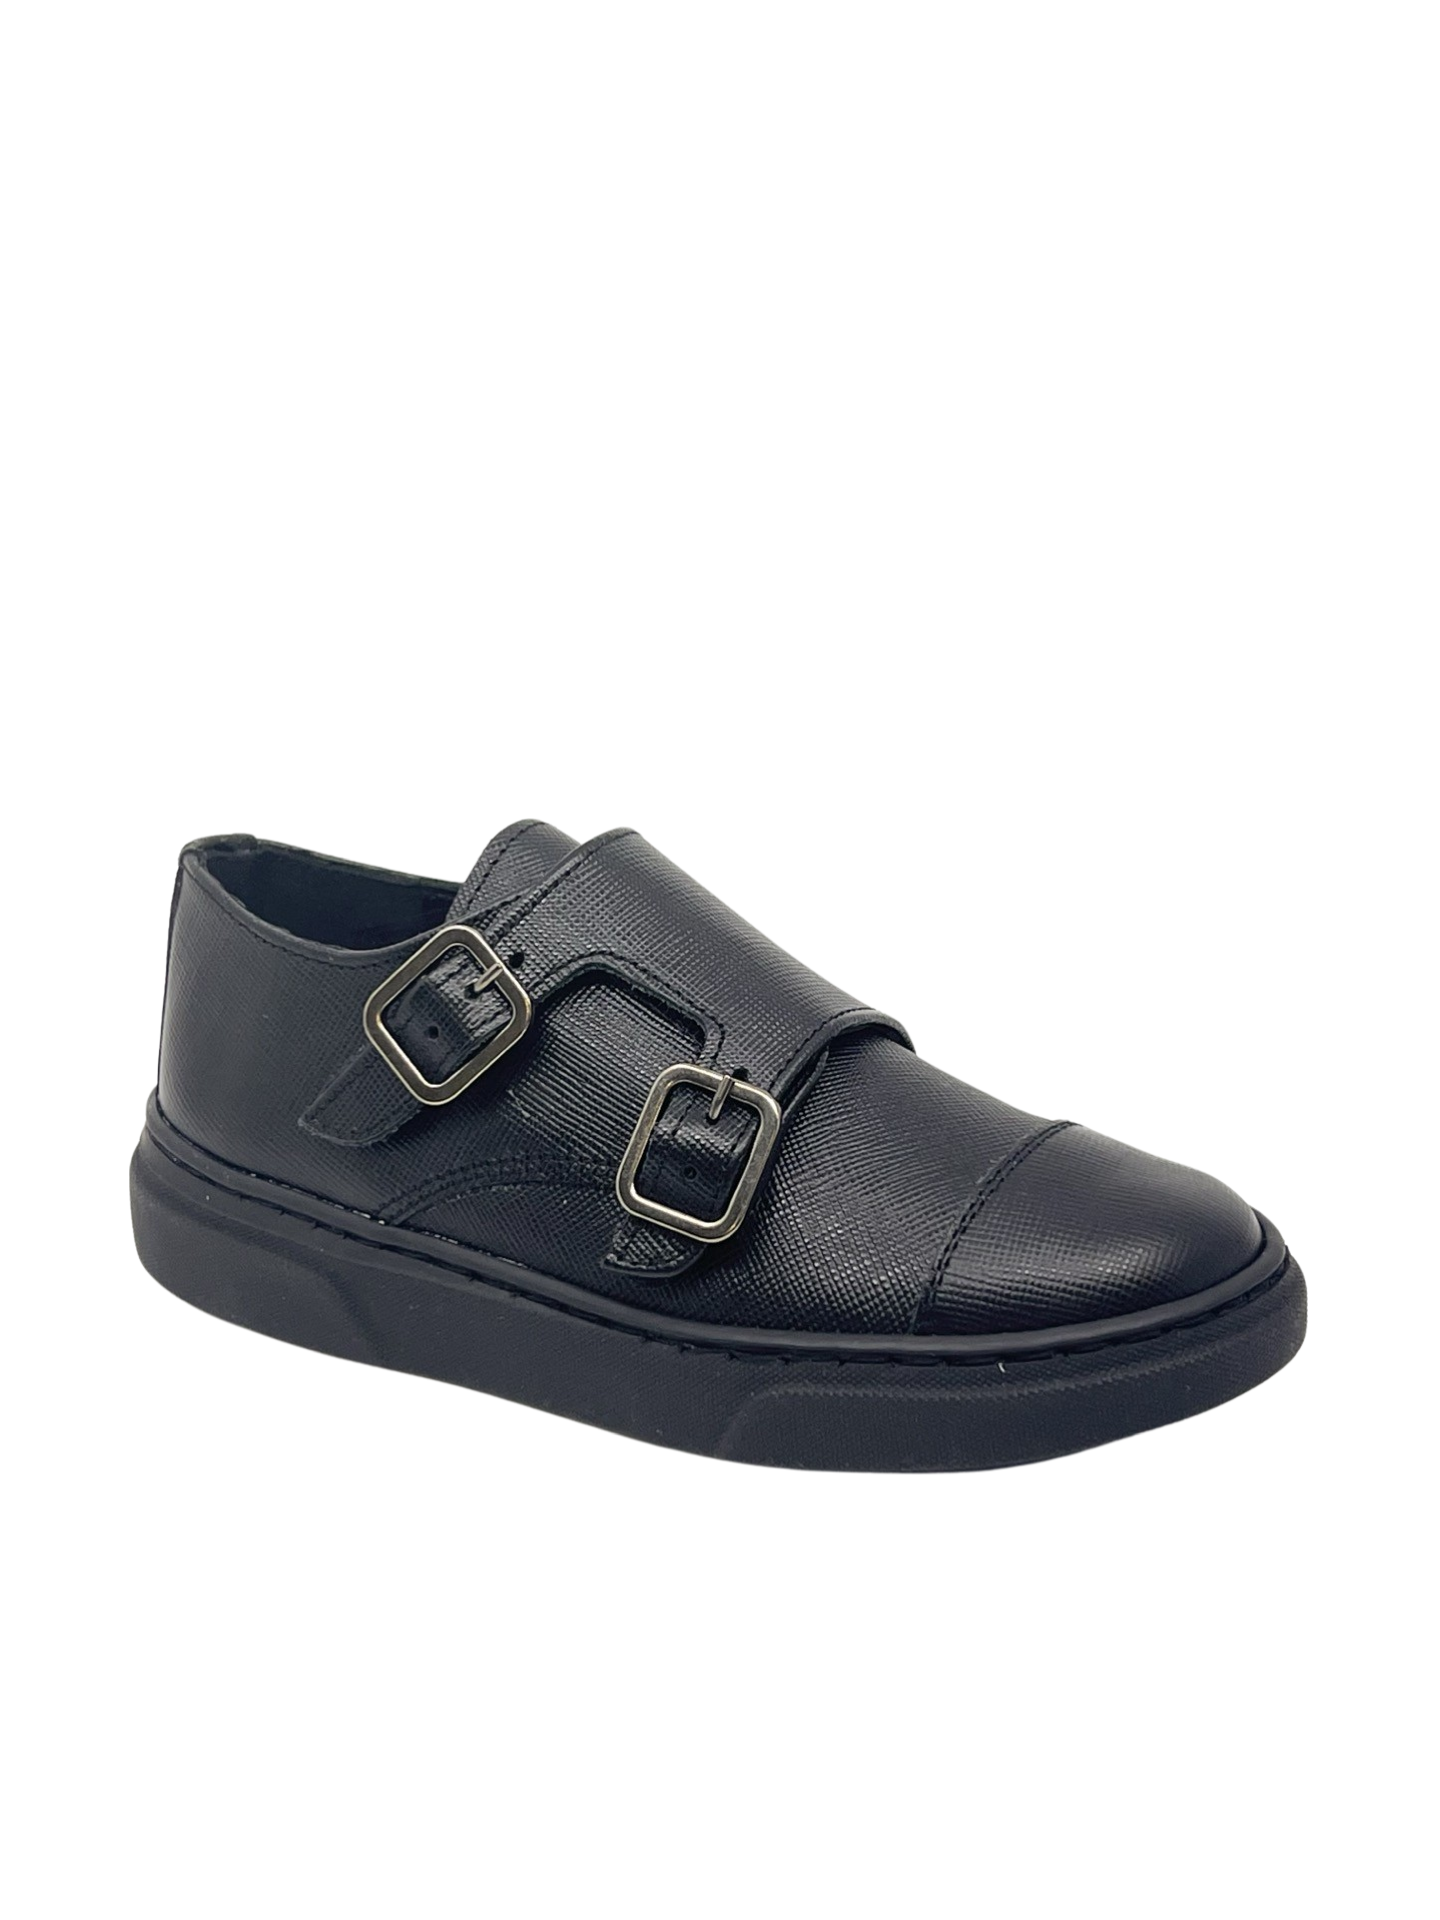 Blublonc Black Textured Double Monkstrap Sneaker